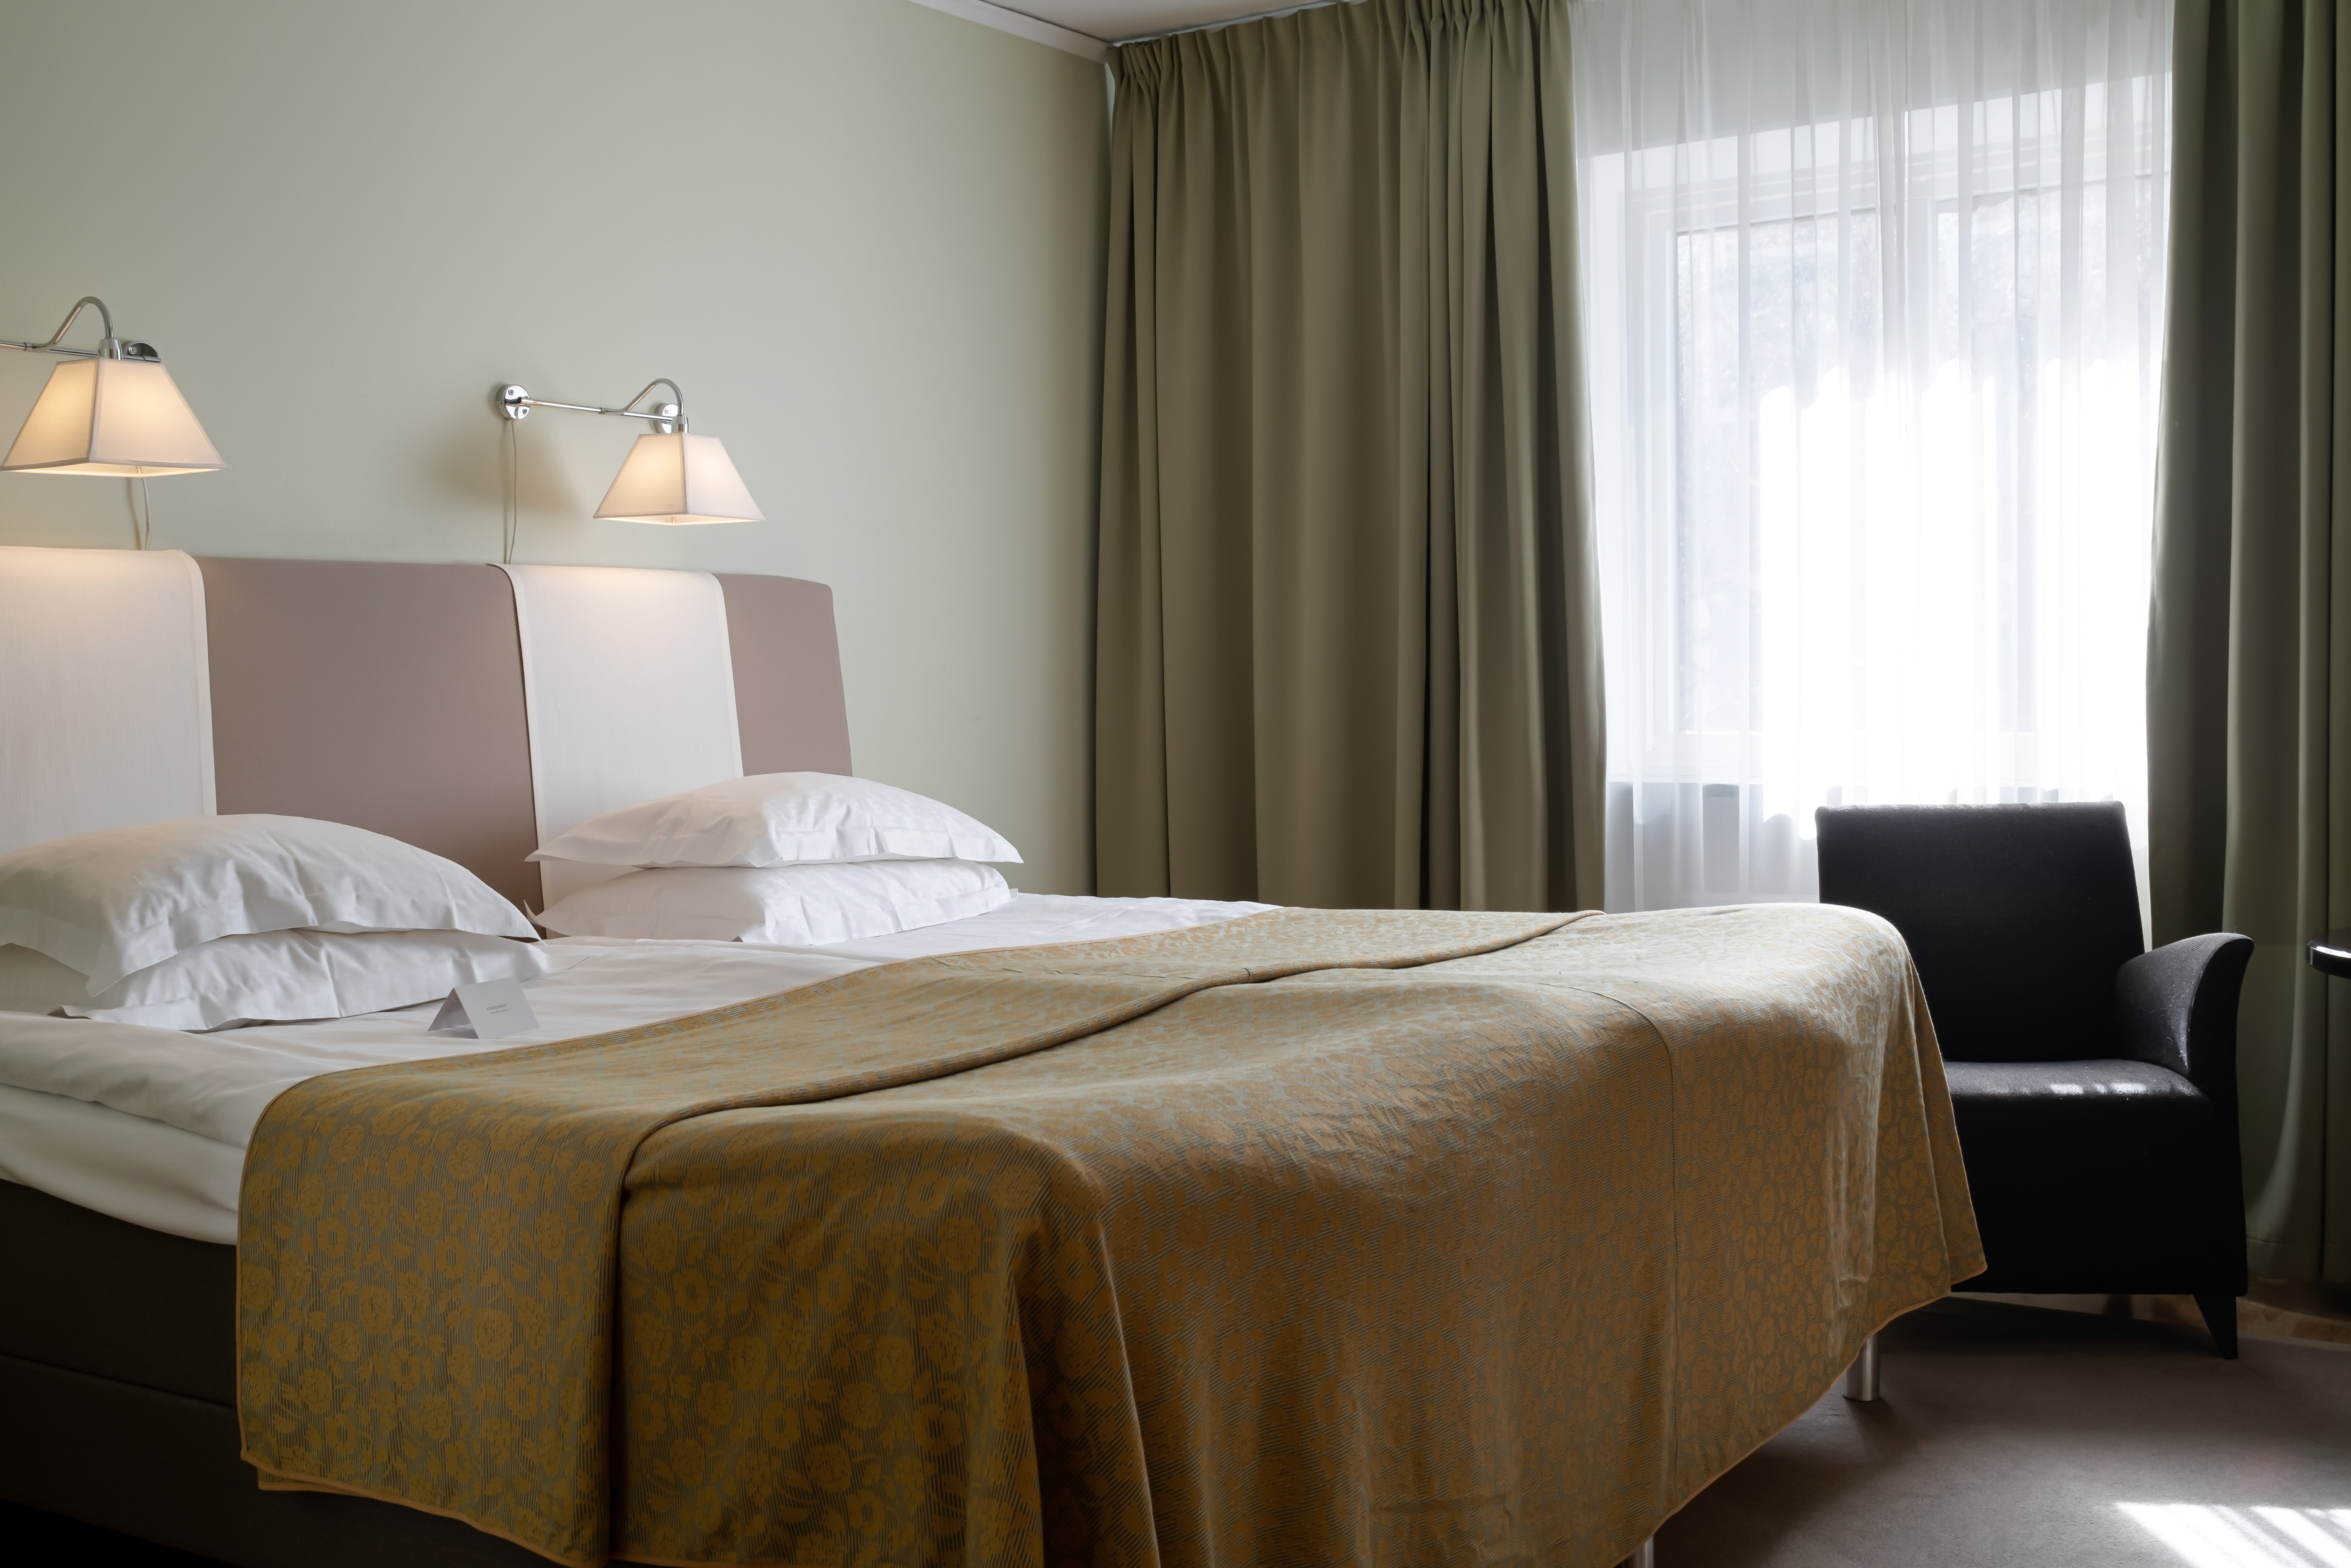 Hotellrum med säng, fåtölj och gardiner